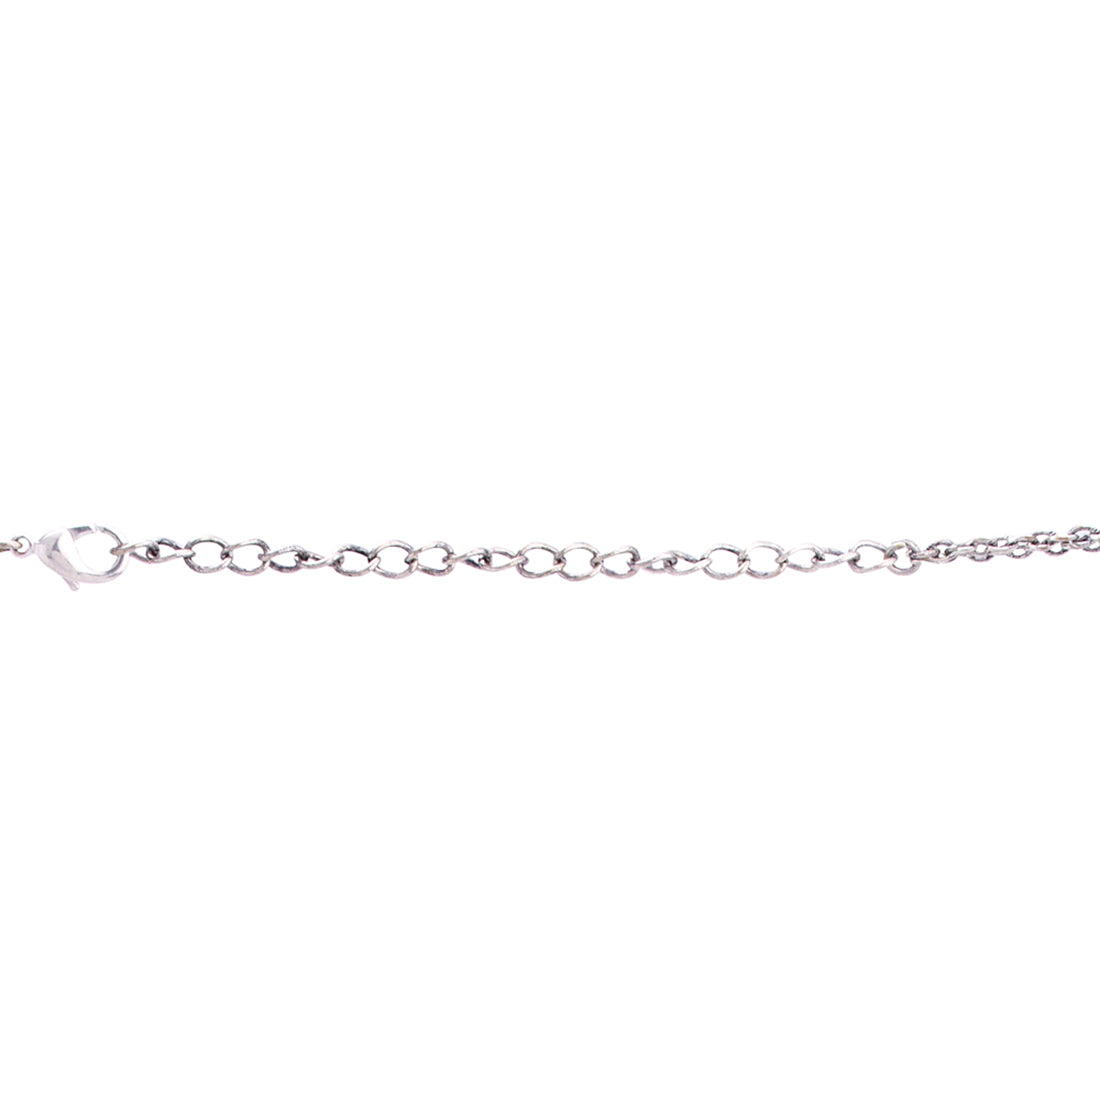 Mandana Enameled Layered Necklace